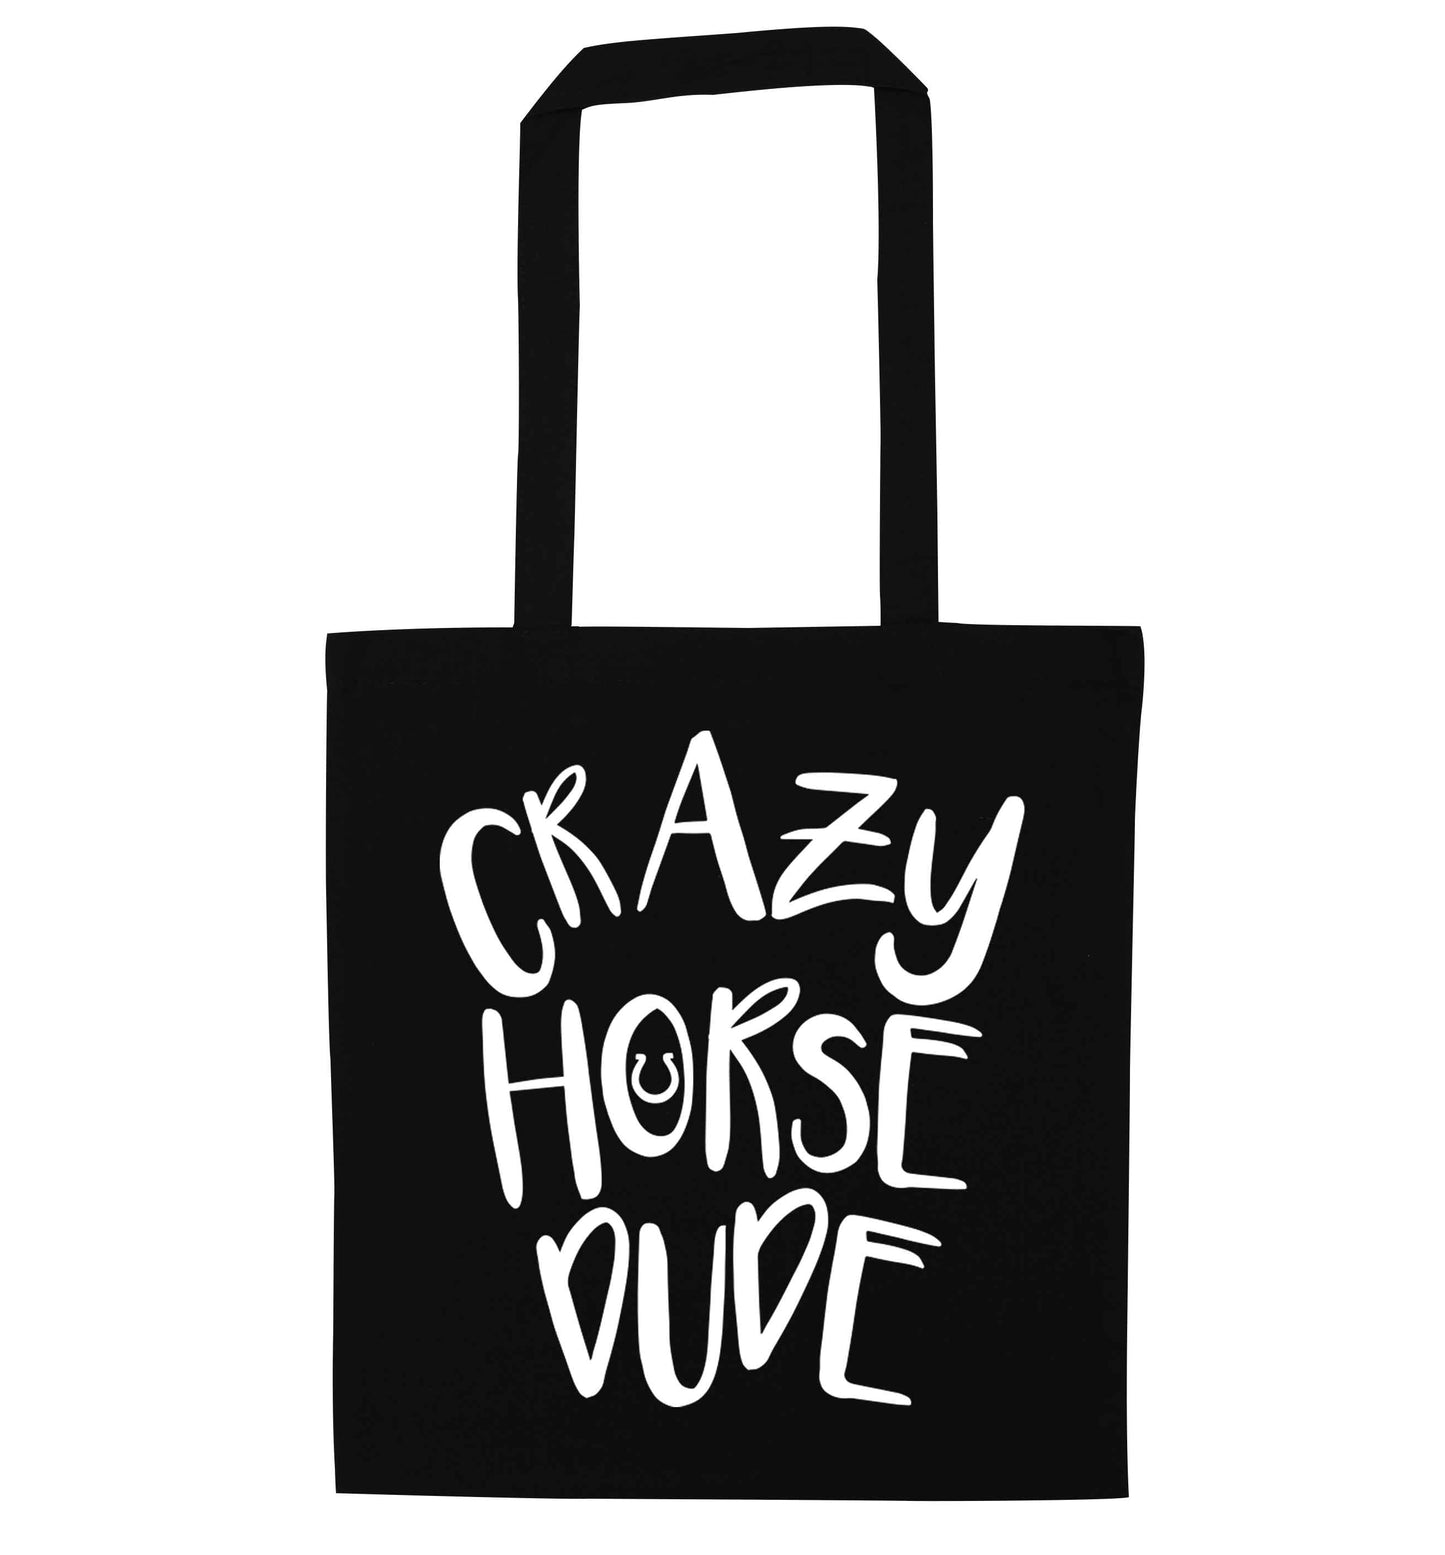 Crazy horse dude black tote bag